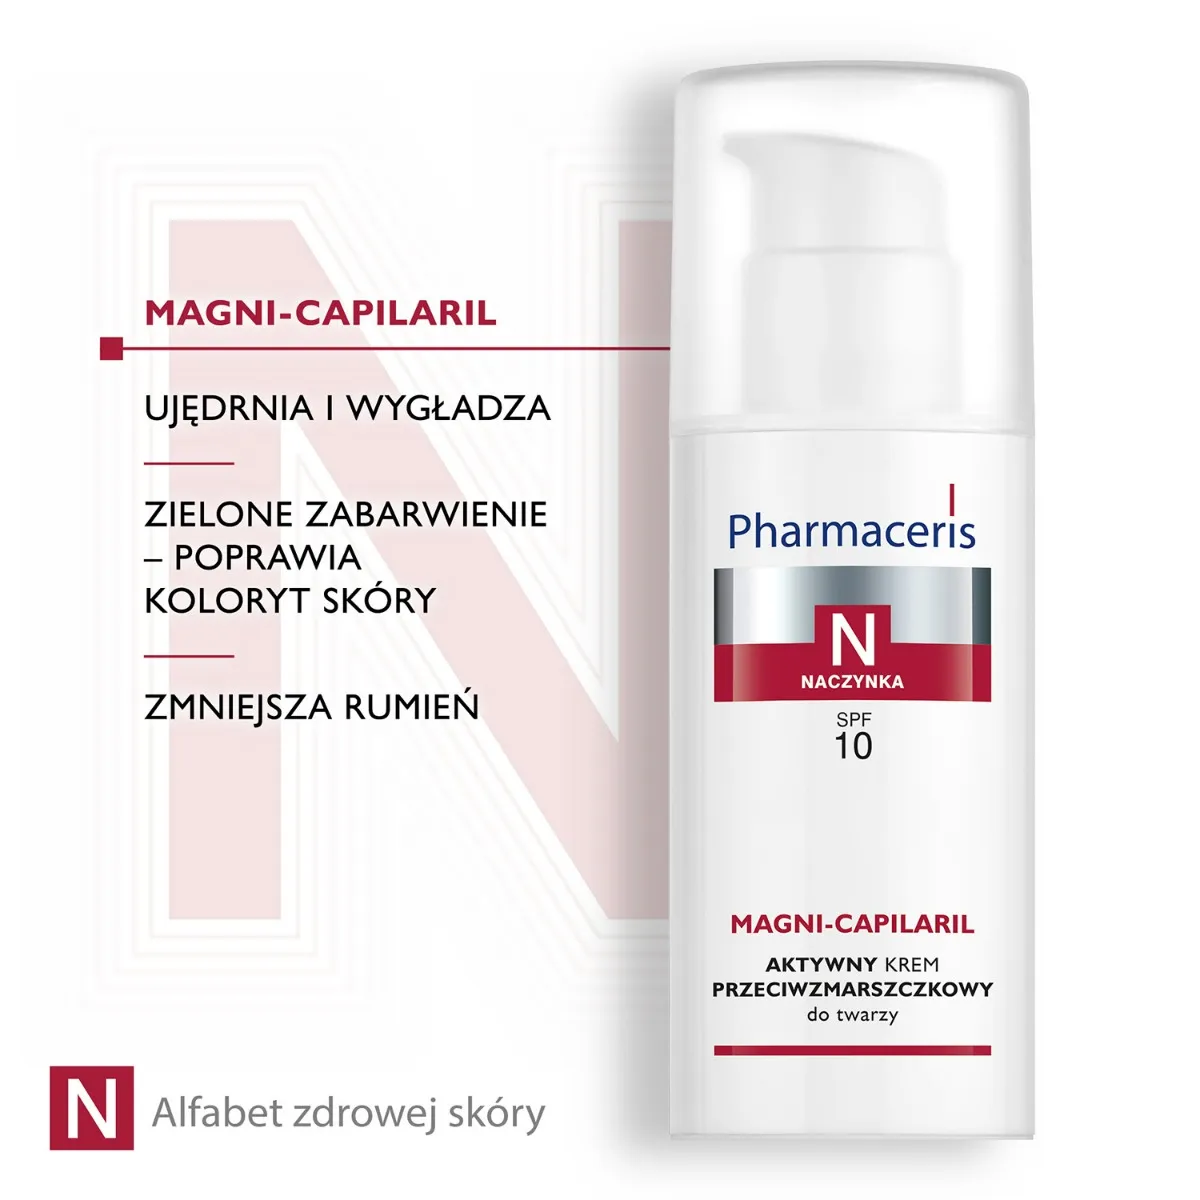 Pharmaceris N, naczynka, aktywny krem przeciwzmarszczkowy do twarzy, Magni-Capilaris SPF 10, 50 ml 